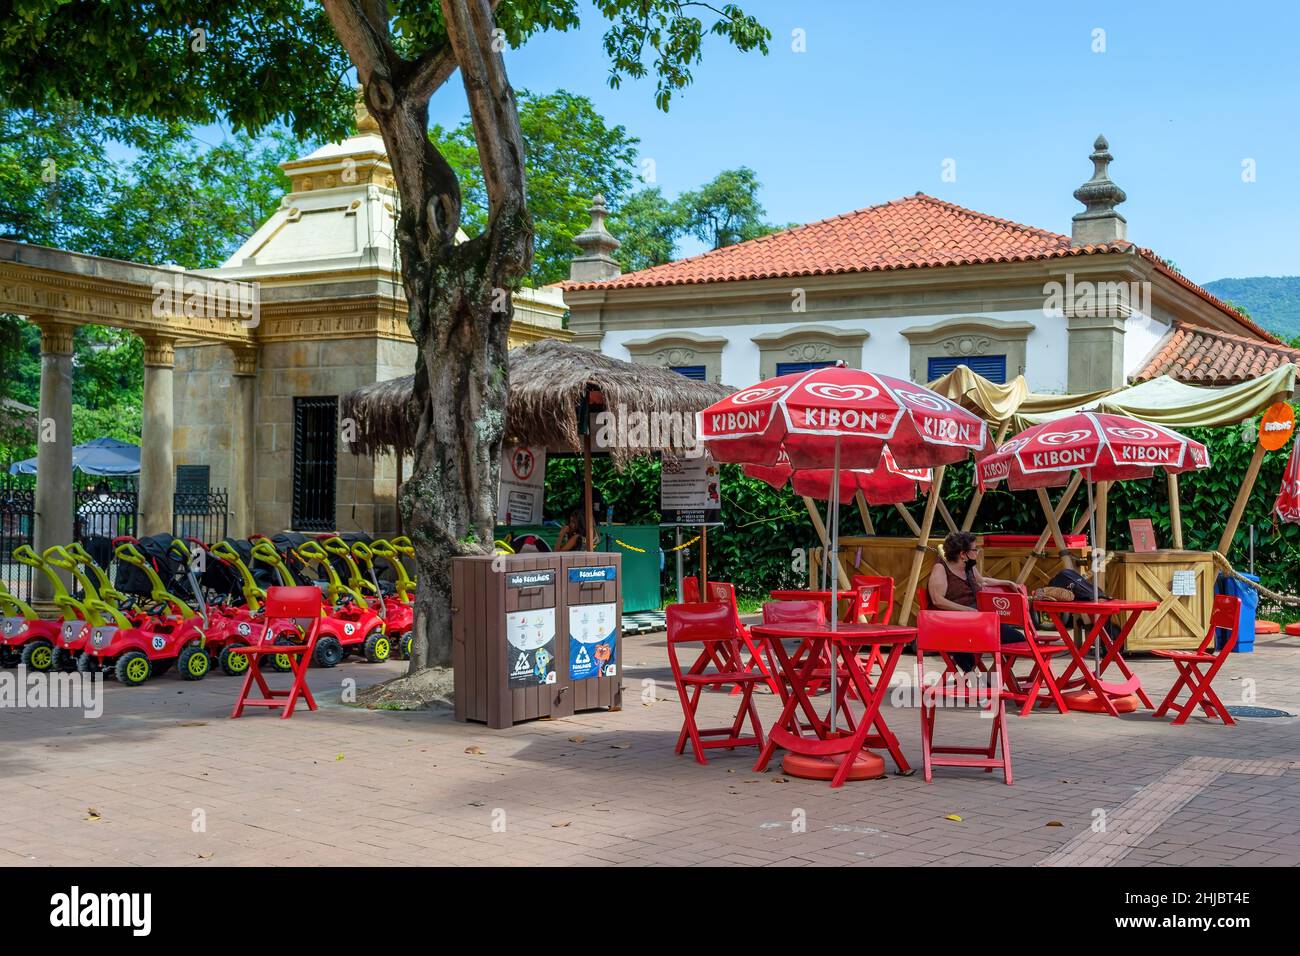 Gastronomie-Geschäft am Eingang der Quinta da Boa Vista, einem öffentlichen Park von großer historischer Bedeutung, der sich im Viertel Sao Cristovao befindet Stockfoto